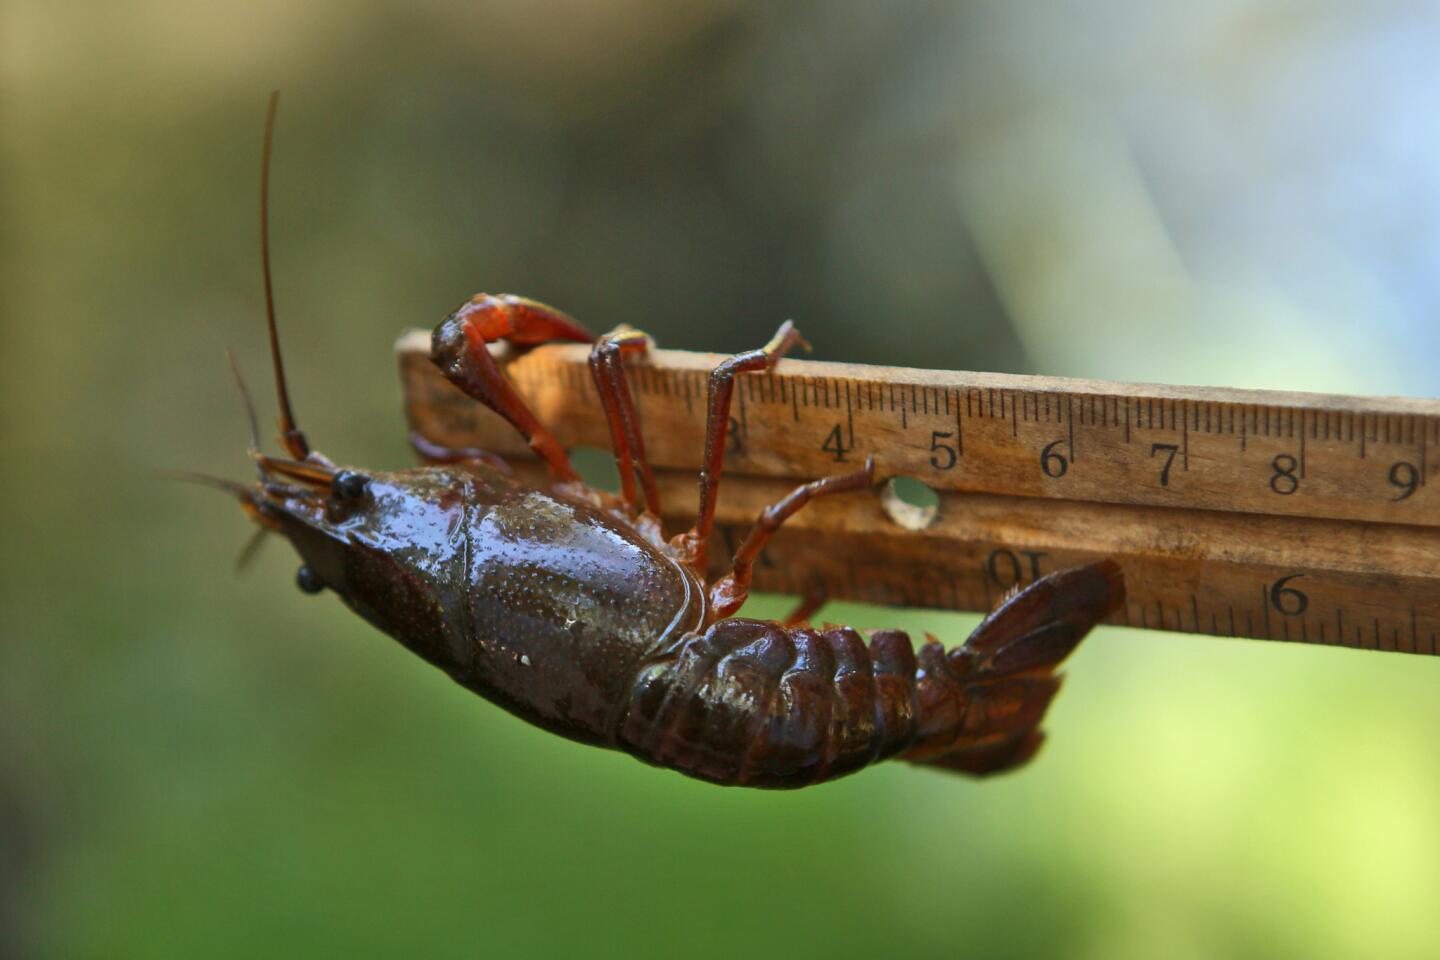 Targeting crayfish